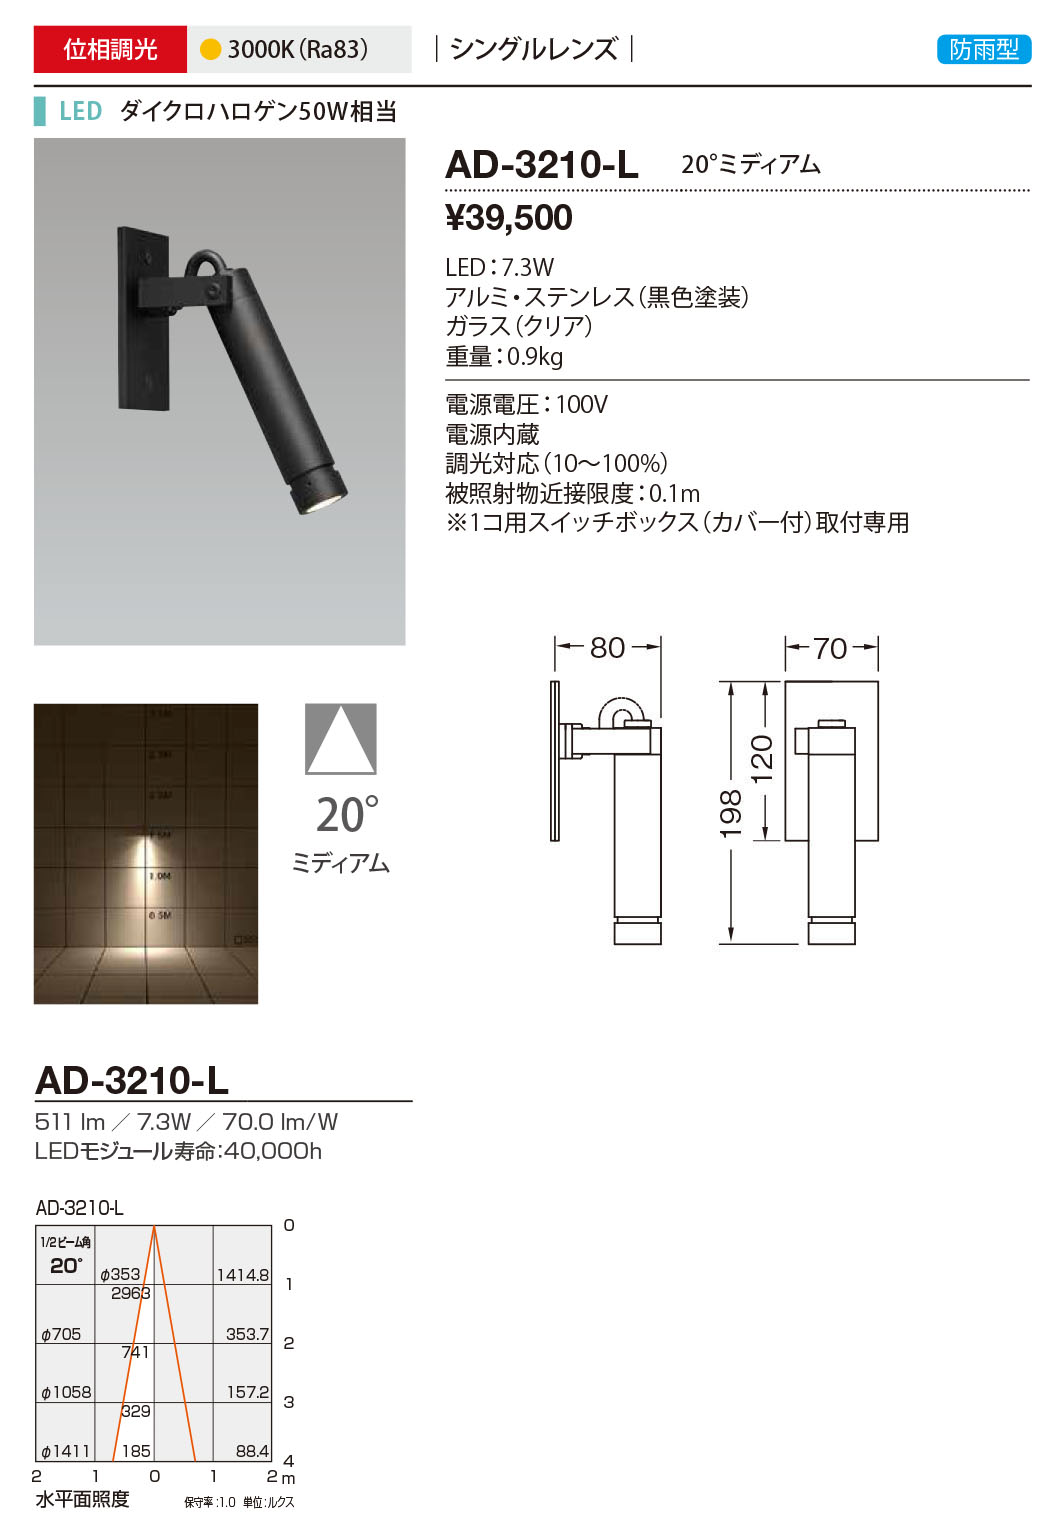 AD-3210-L RcƖ OX|bgCg F LED dF  20x